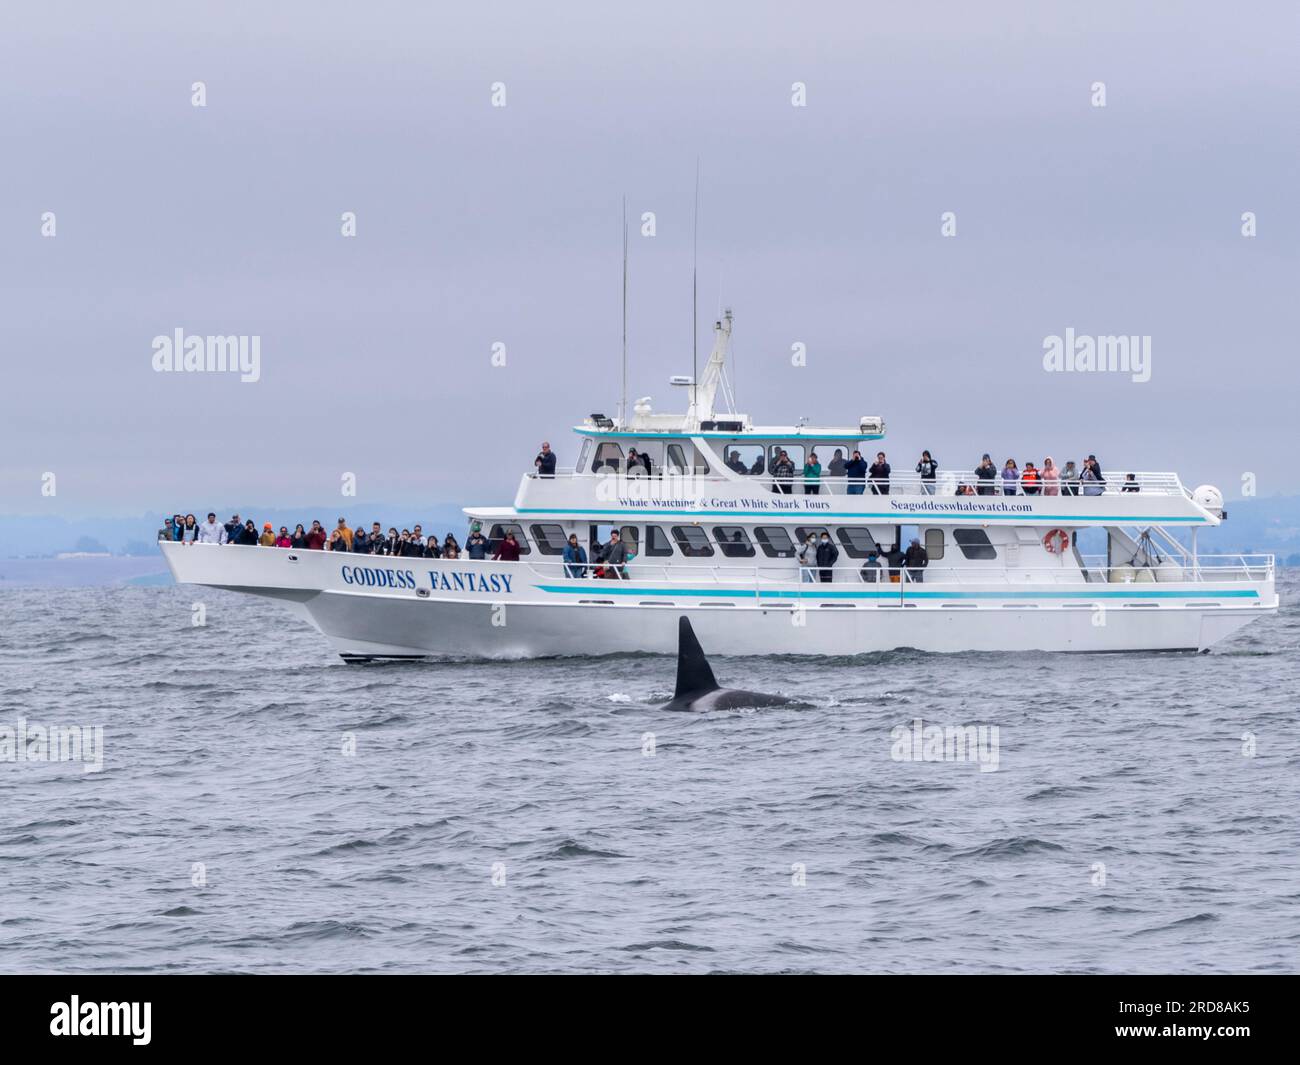 Bateau commercial d'observation des baleines Goddess Fantasy opérant dans Monterey Bay Marine Sanctuary, Californie, États-Unis d'Amérique, Amérique du Nord Banque D'Images